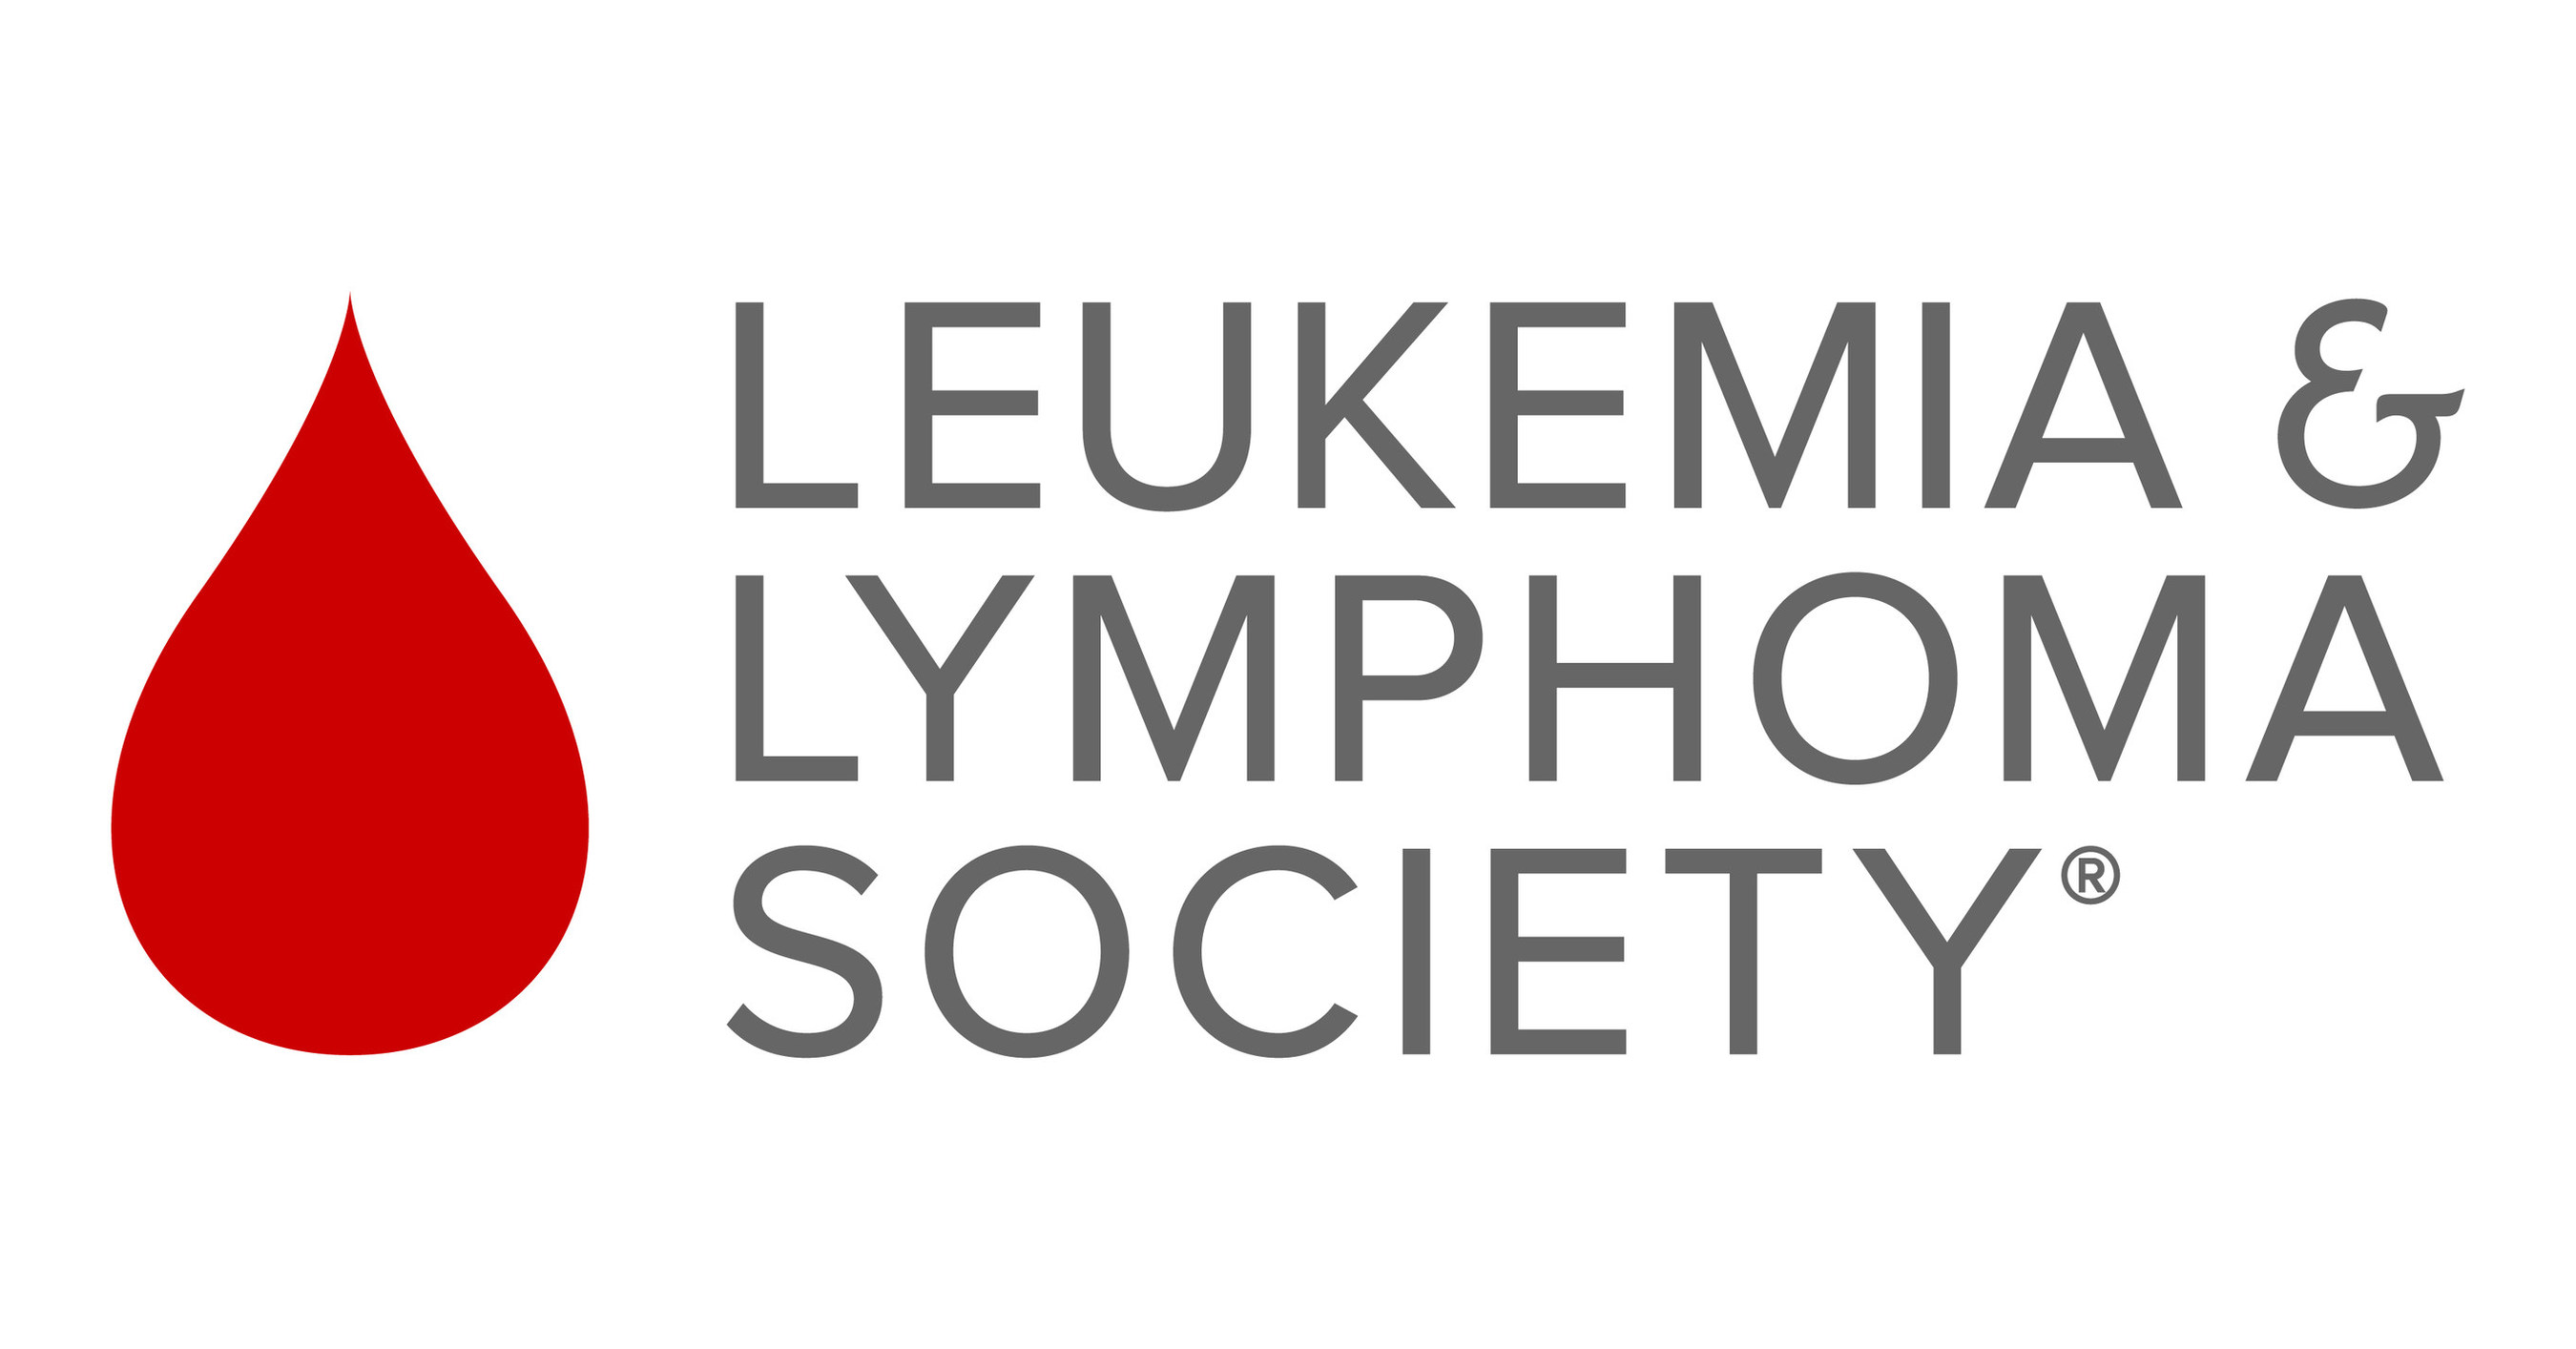 leukemia lymphoma society logo